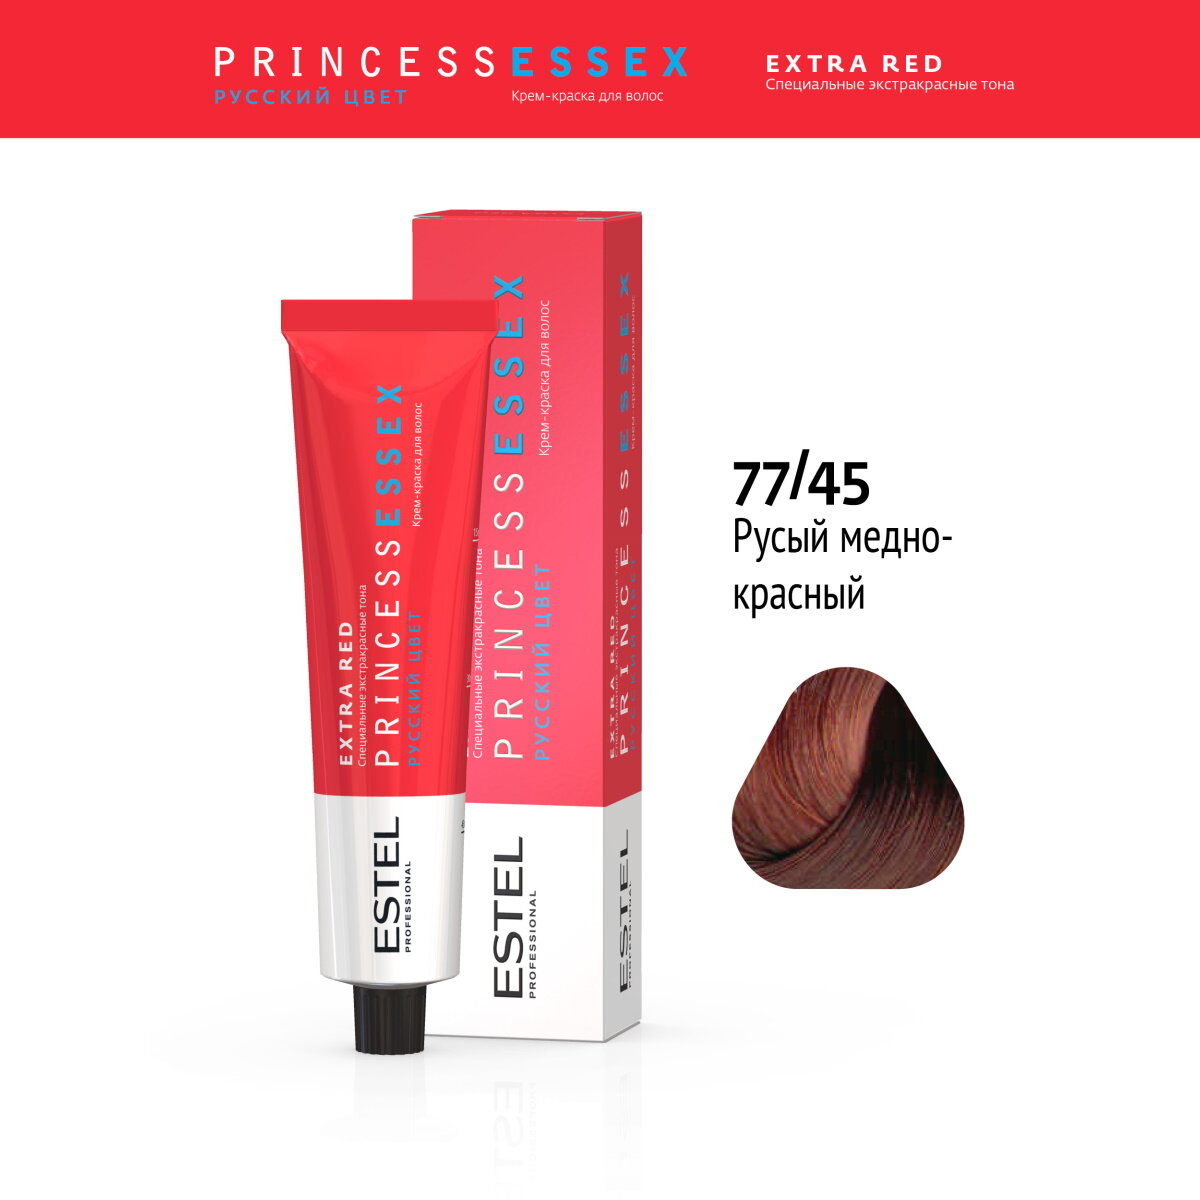 Крем-краска PRINCESS ESSEX EXTRA RED для окрашивания волос ESTEL PROFESSIONAL 77/45 чувственная мамба 60 мл